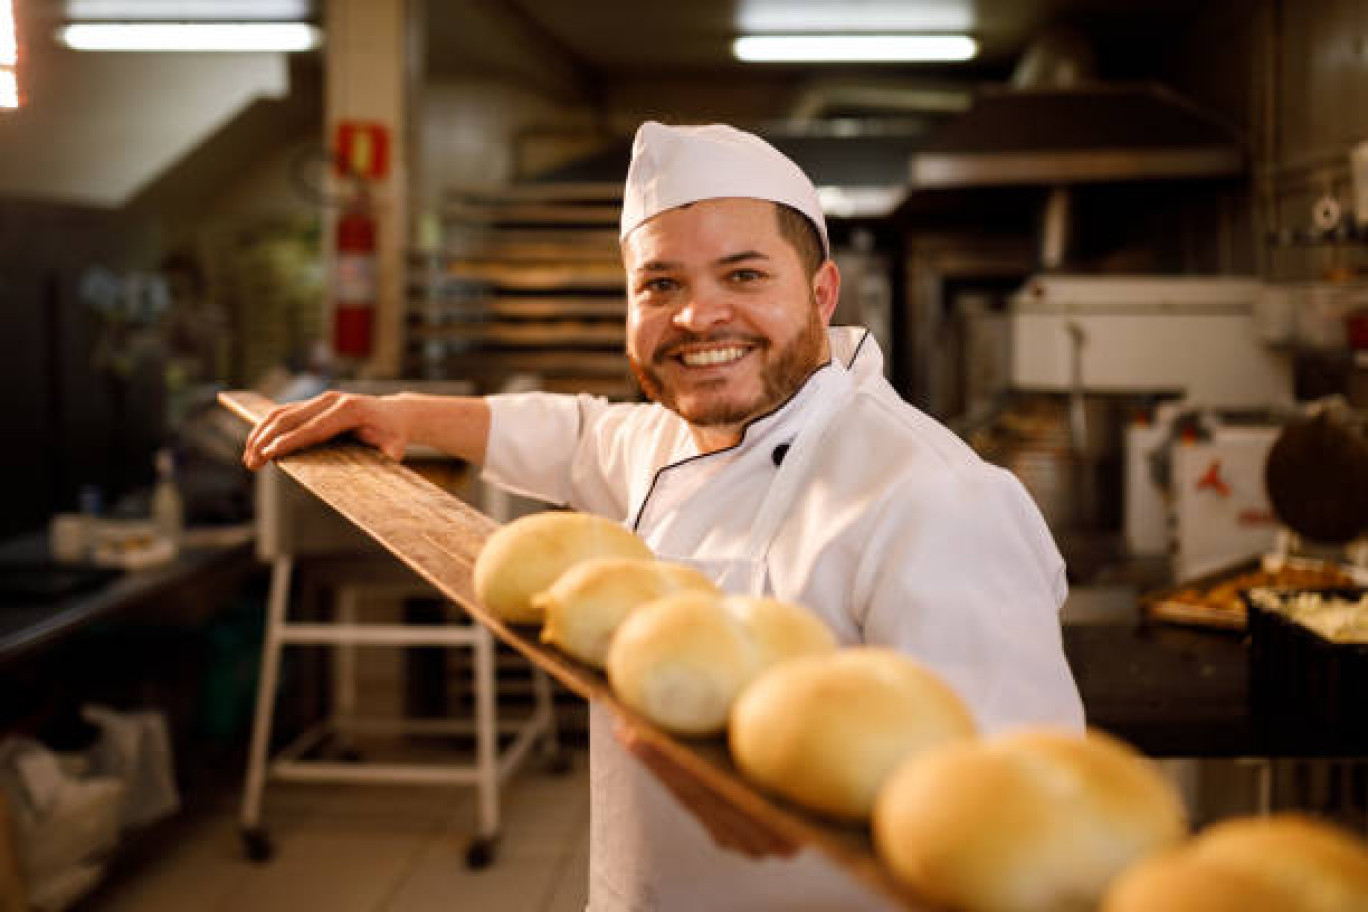 La boulangerie artisanale est un acteur essentiel pour l'emploi et l'économie des territoires. avec plus de 200 000 salariés et 30 000 apprentis en France. 